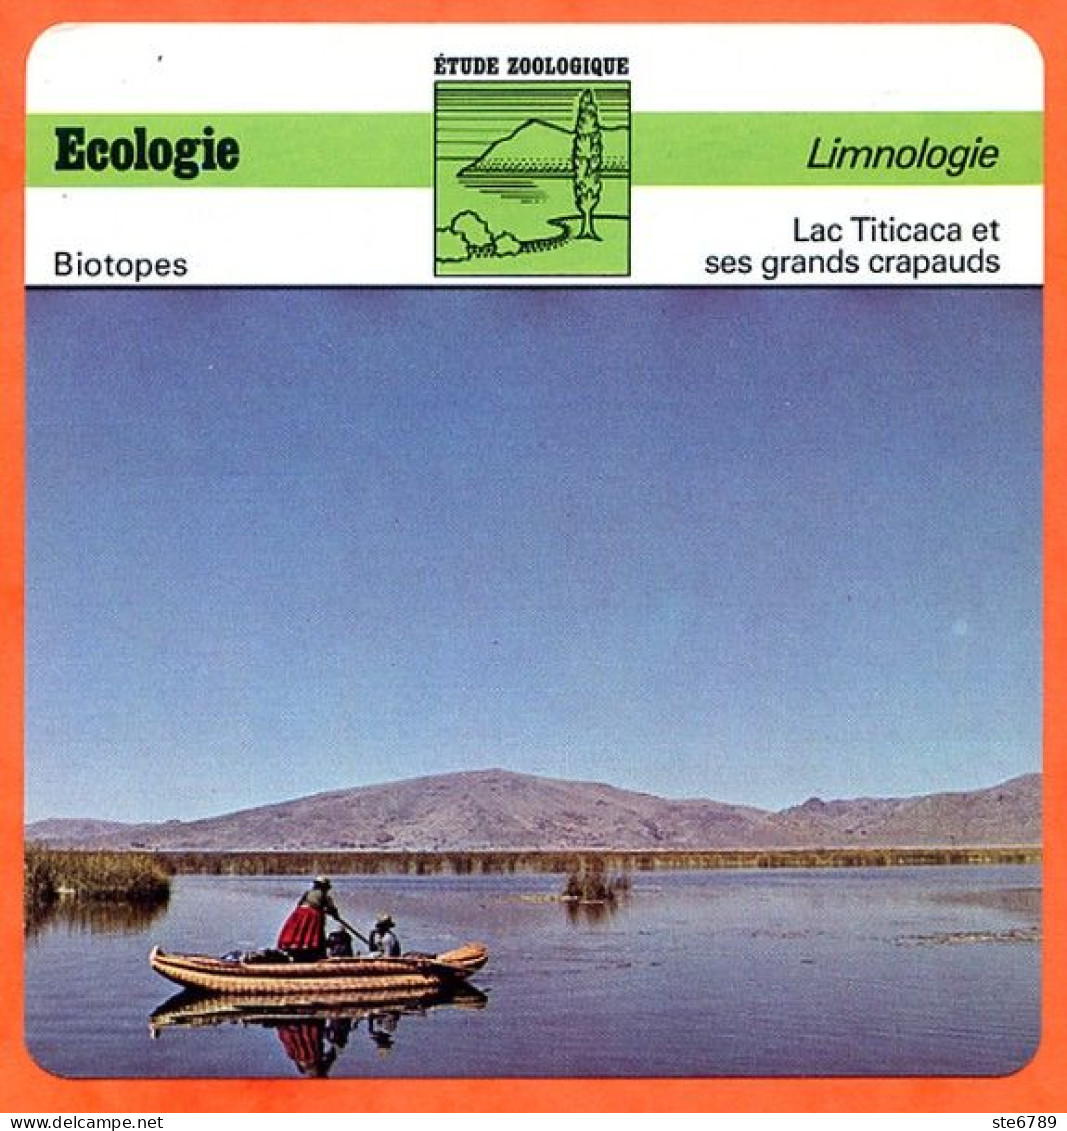 Fiche Ecologie Lac Titicaca Et Ses Grands Crapauds Limnologie Etude Zoologique Biotopes - Géographie